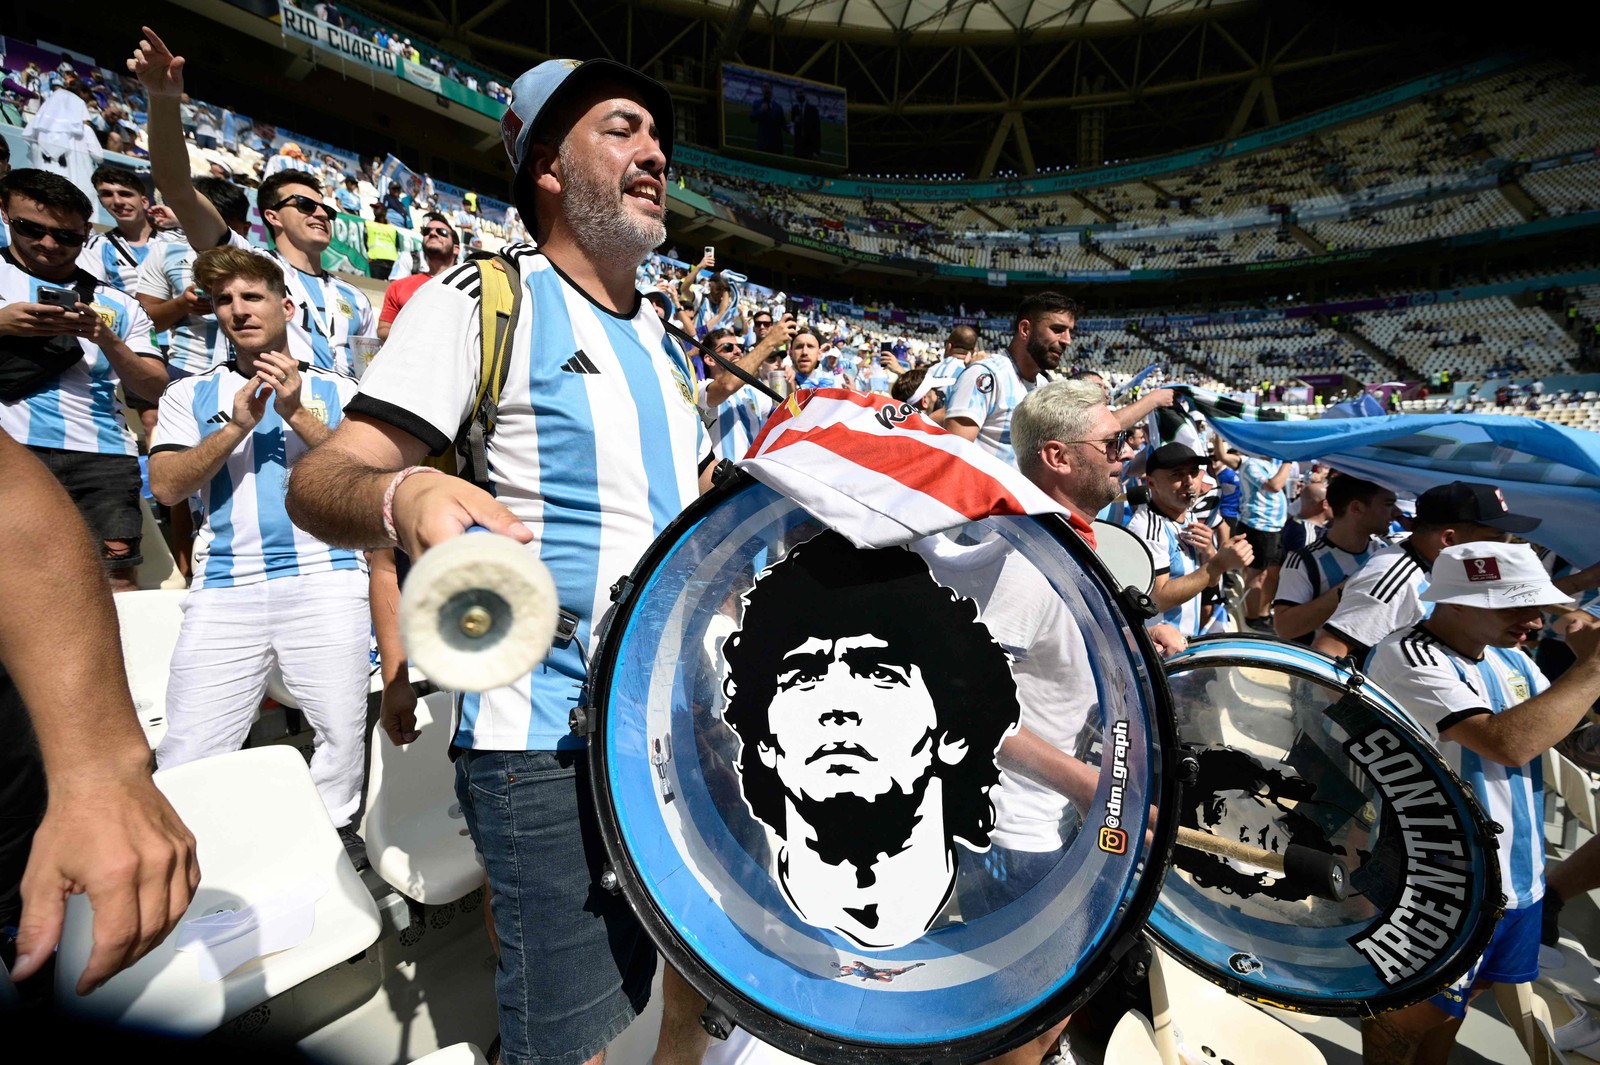 Torcedores da Argentina aguardam início da partida entre Argentina e Arábia Saudita, no Estádio Lusail — Foto: JUAN MABROMATA / AFP